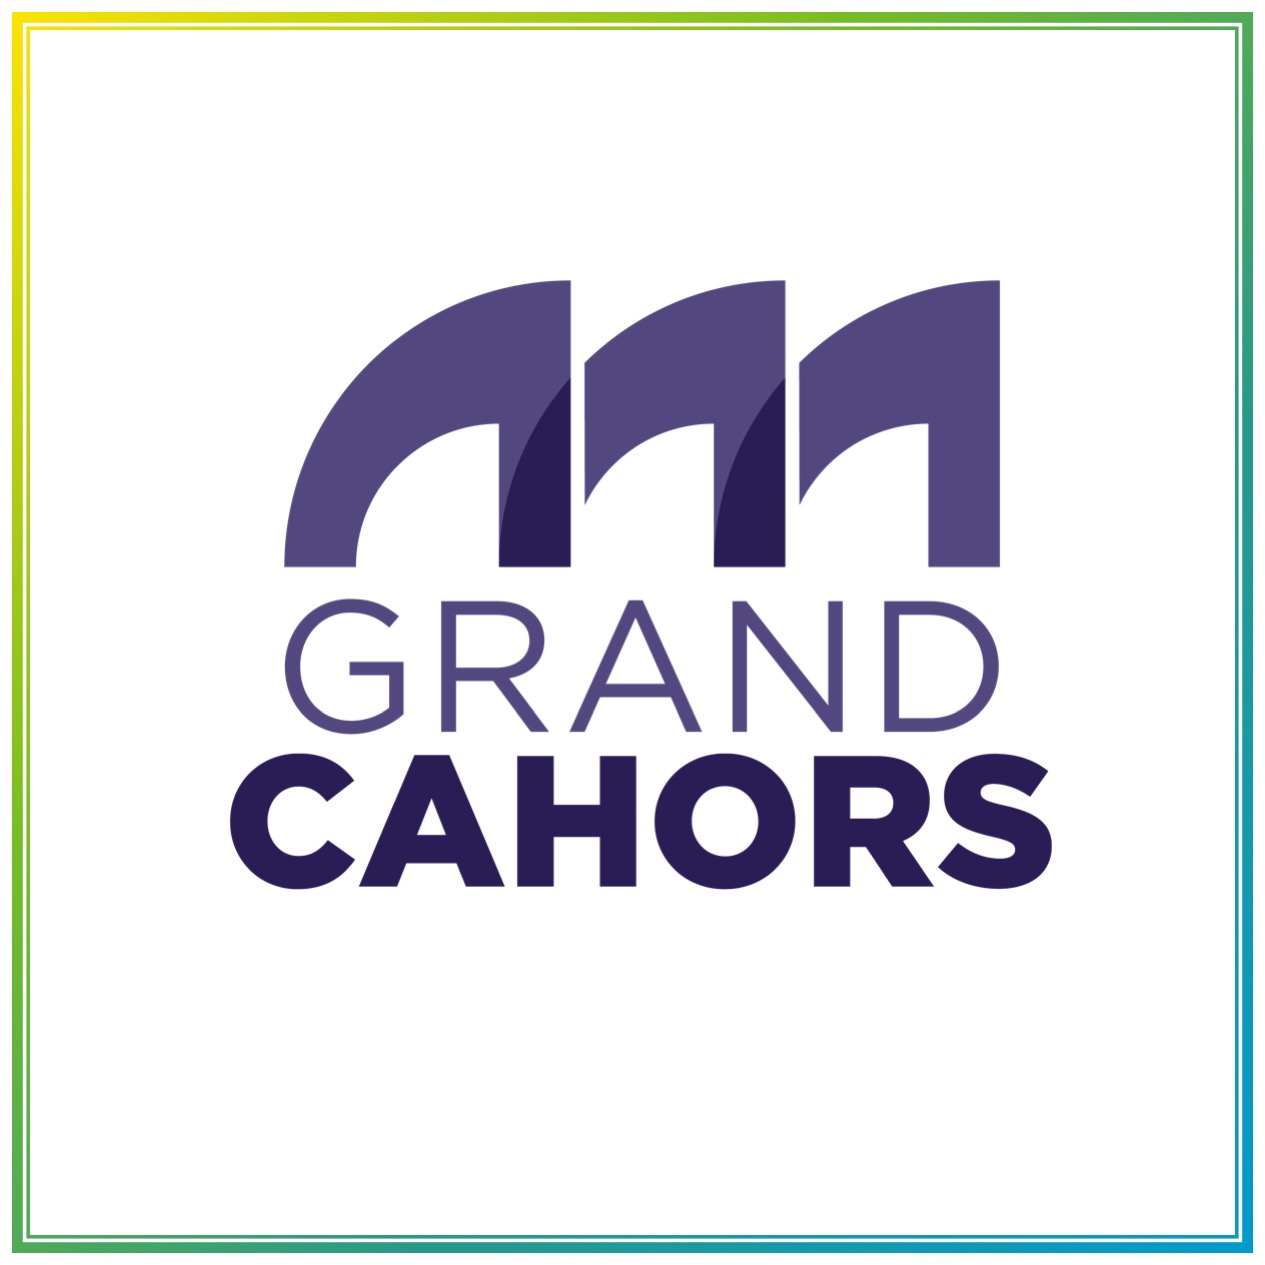 Grand Cahors